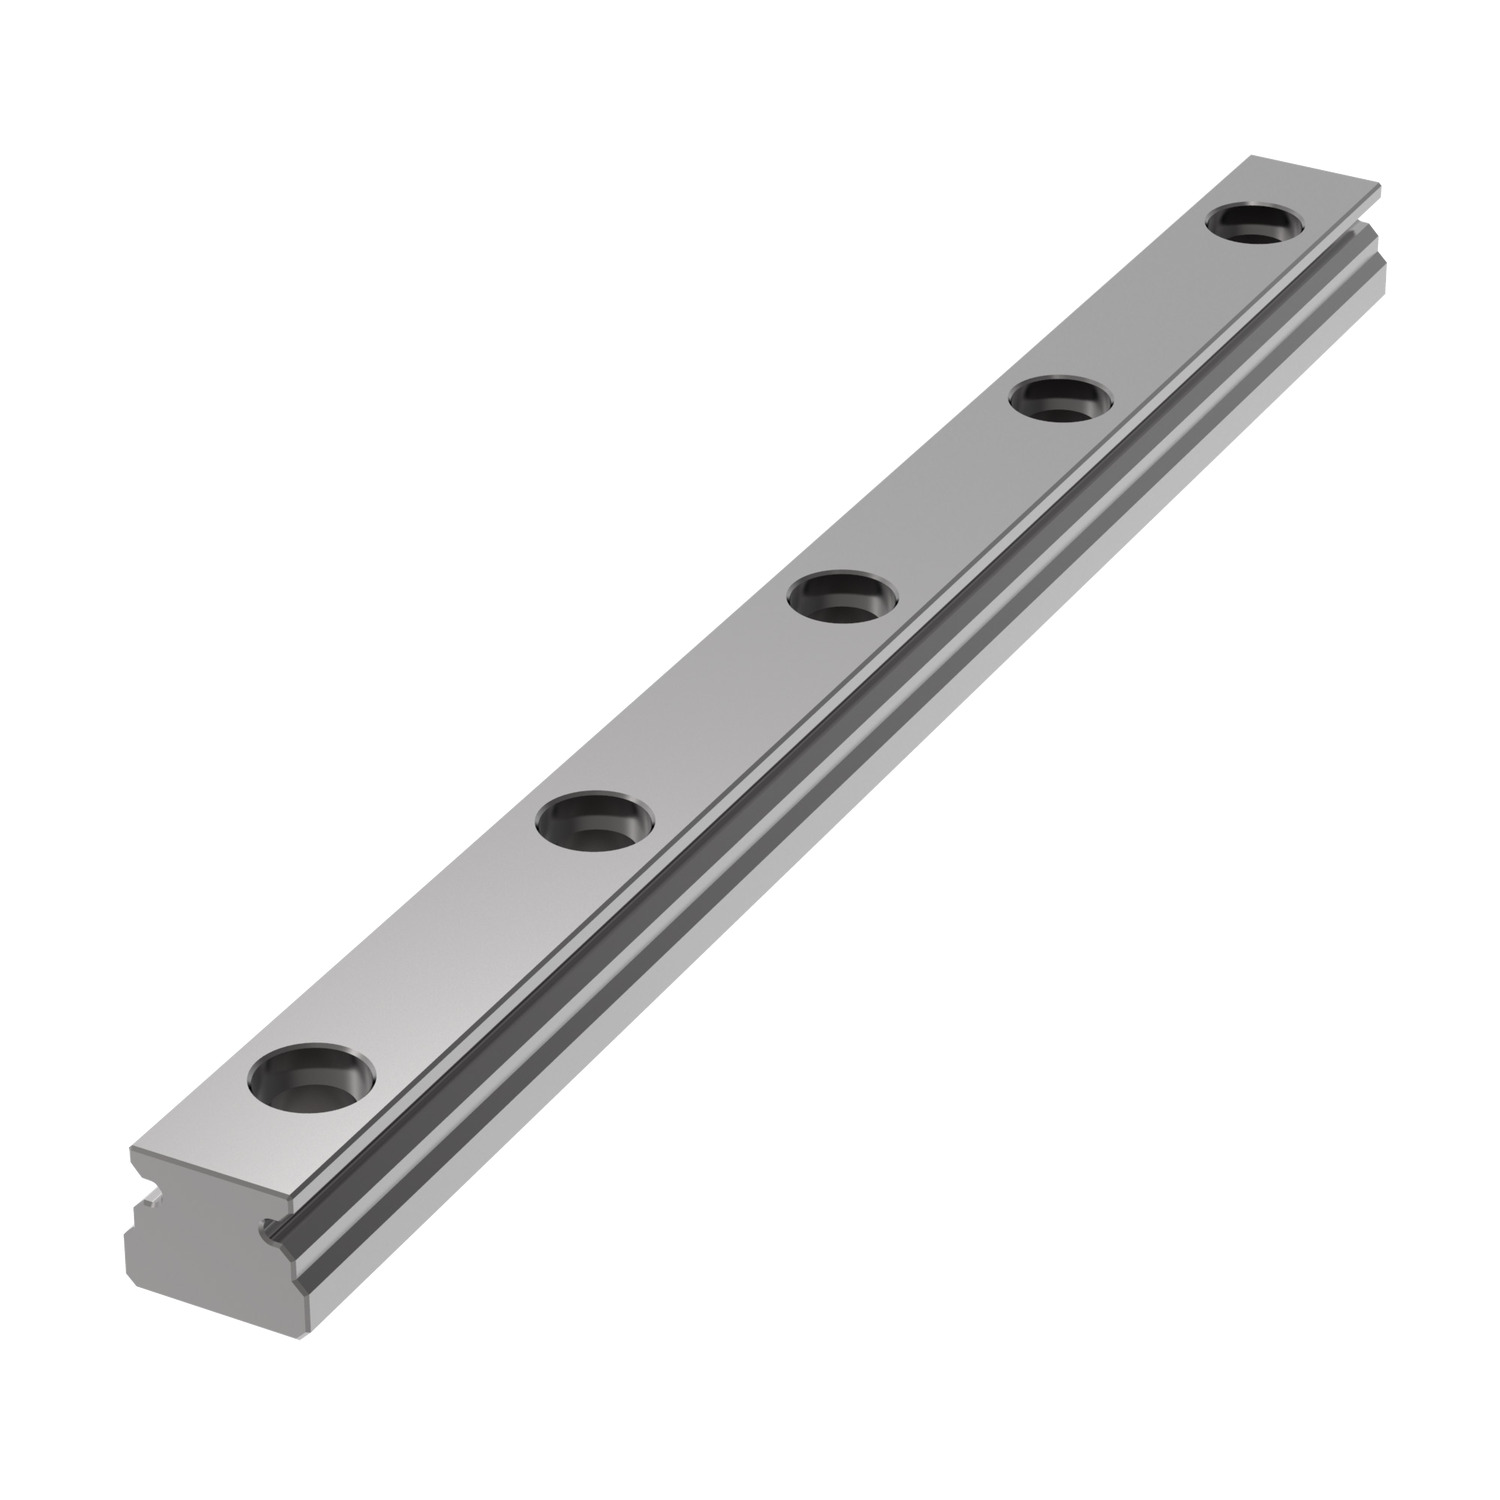 L1010.05 - 5mm Miniature Linear Rail